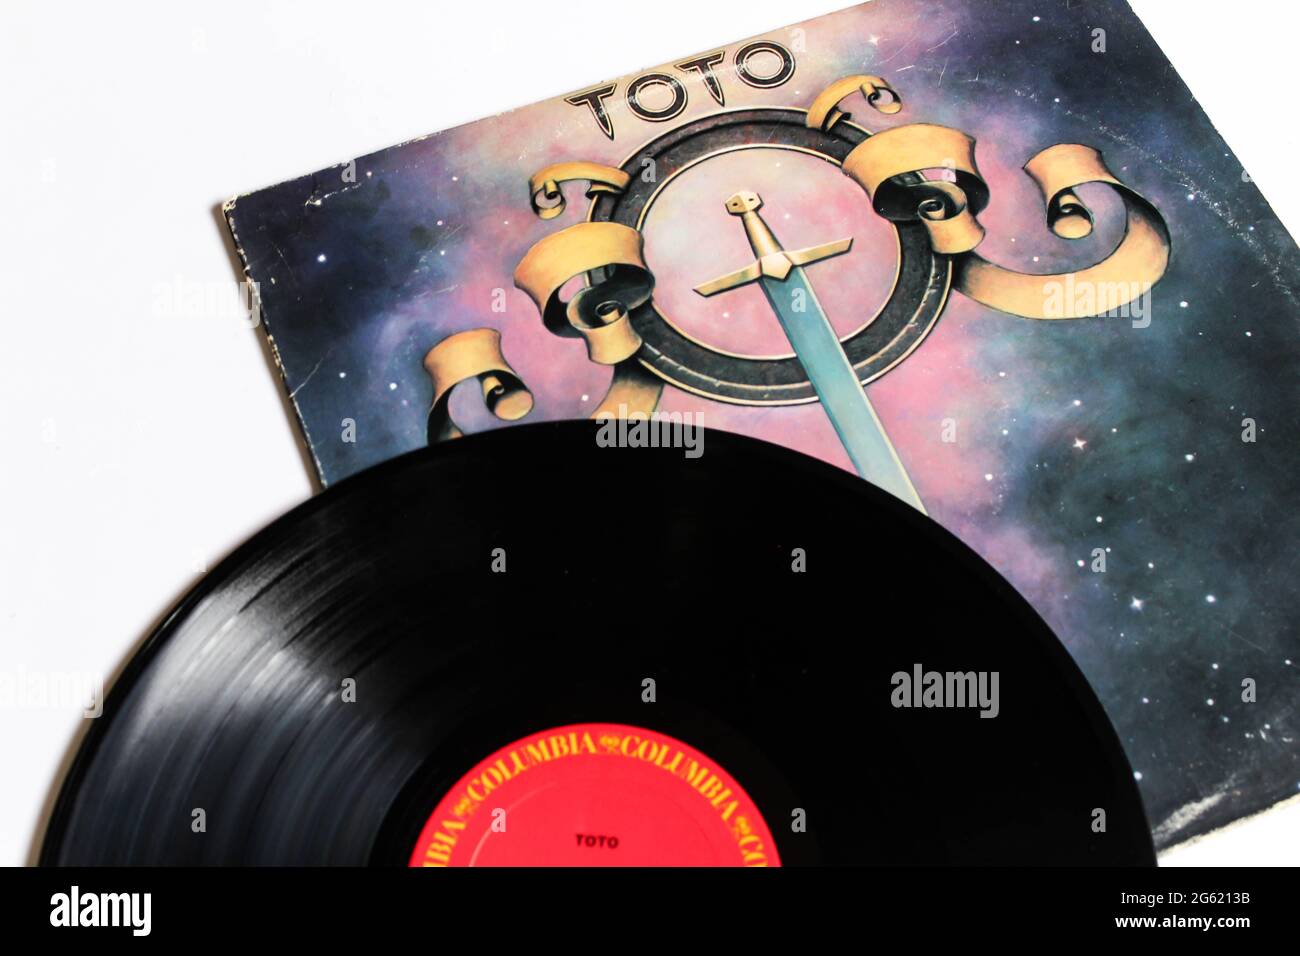 Classic progressive rock band, Toto, album musicale su disco LP con disco in vinile. Album autotitintato. Copertina album Foto Stock